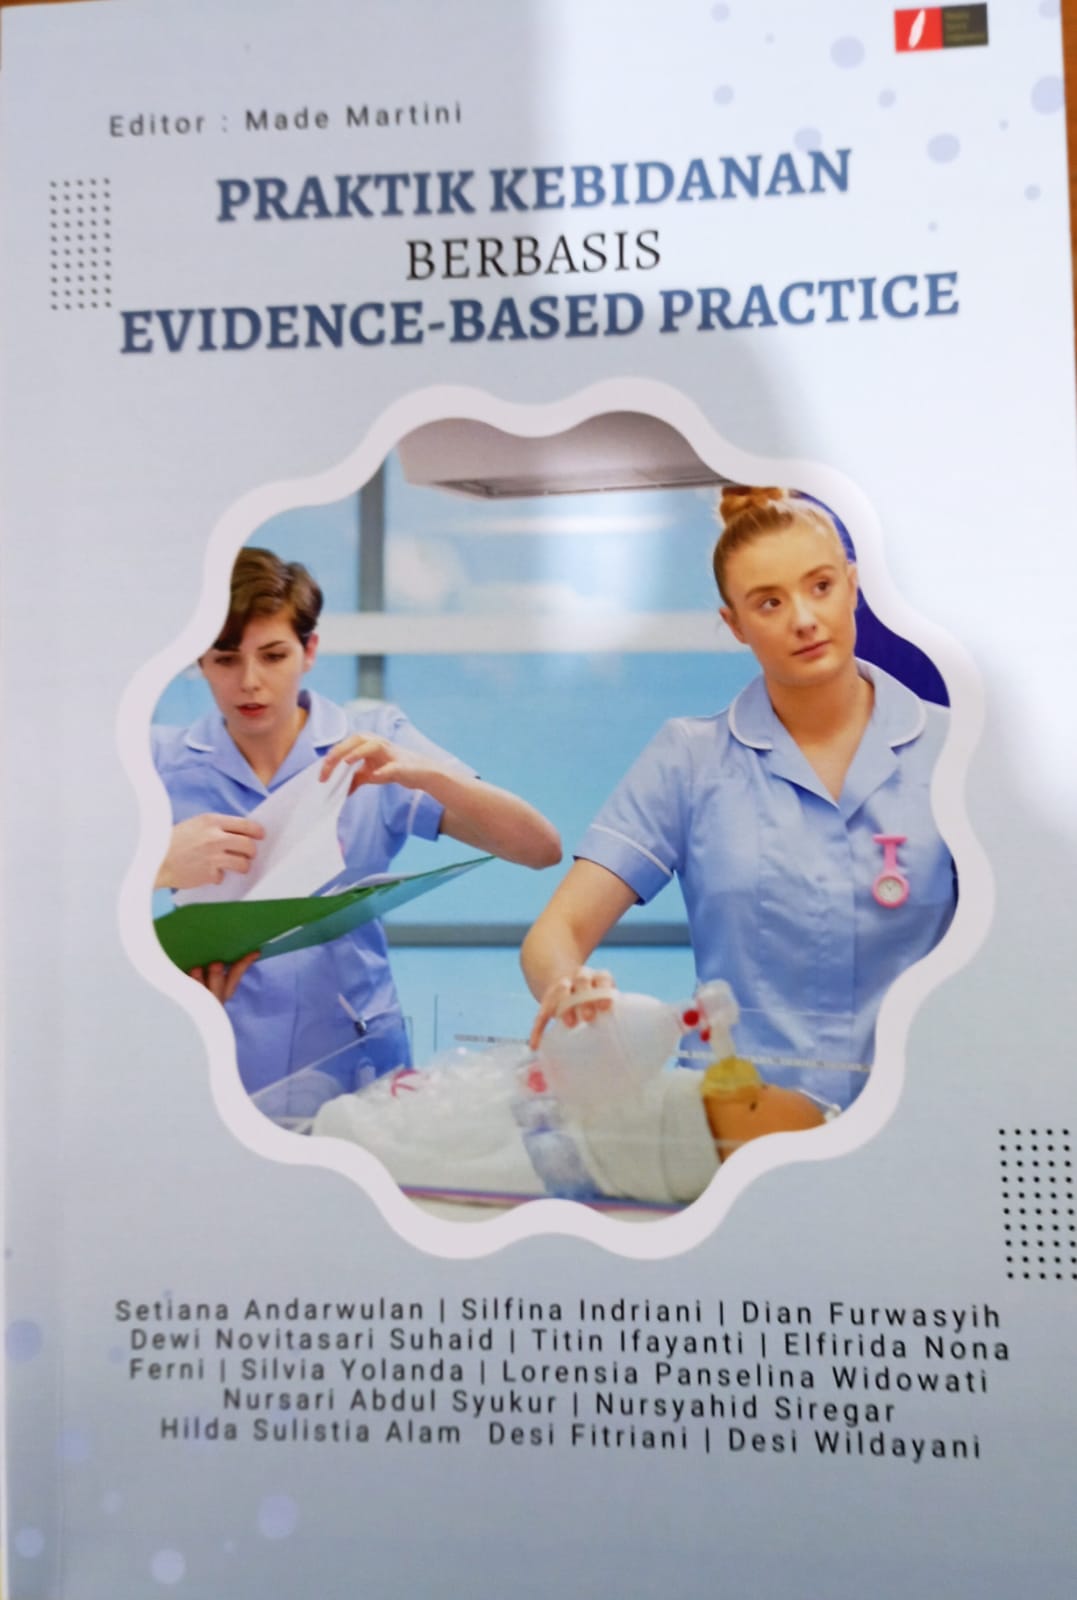 Praktik kebidanan berbasis evidence-based practice